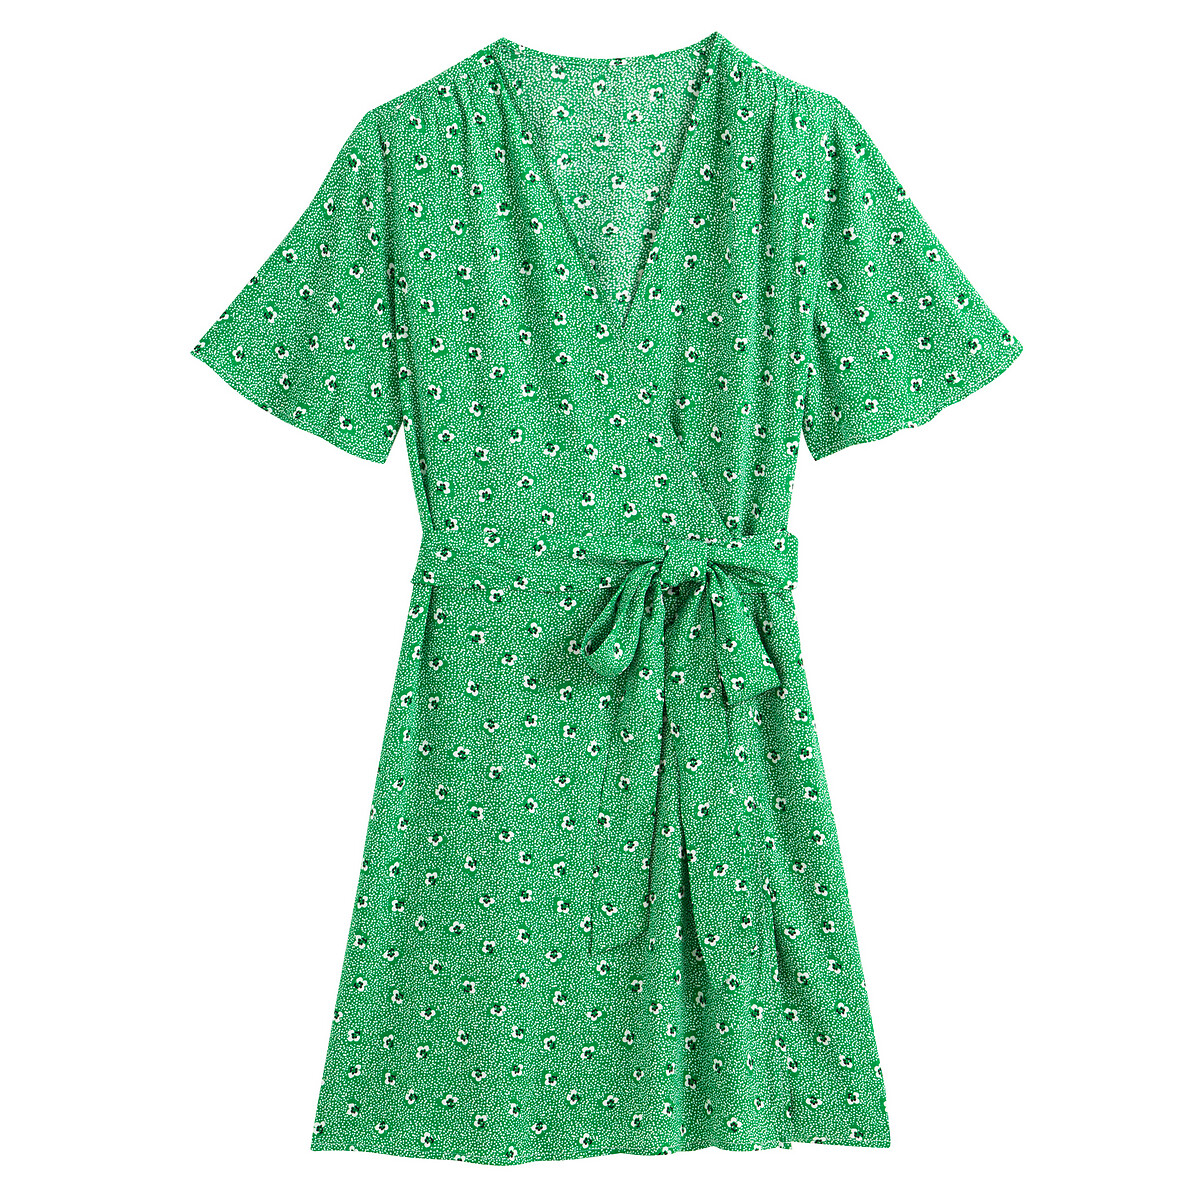 Платье LaRedoute С запахом с цветочным рисунком и короткими рукавами 44 (FR) - 50 (RUS) зеленый, размер 44 (FR) - 50 (RUS) С запахом с цветочным рисунком и короткими рукавами 44 (FR) - 50 (RUS) зеленый - фото 5